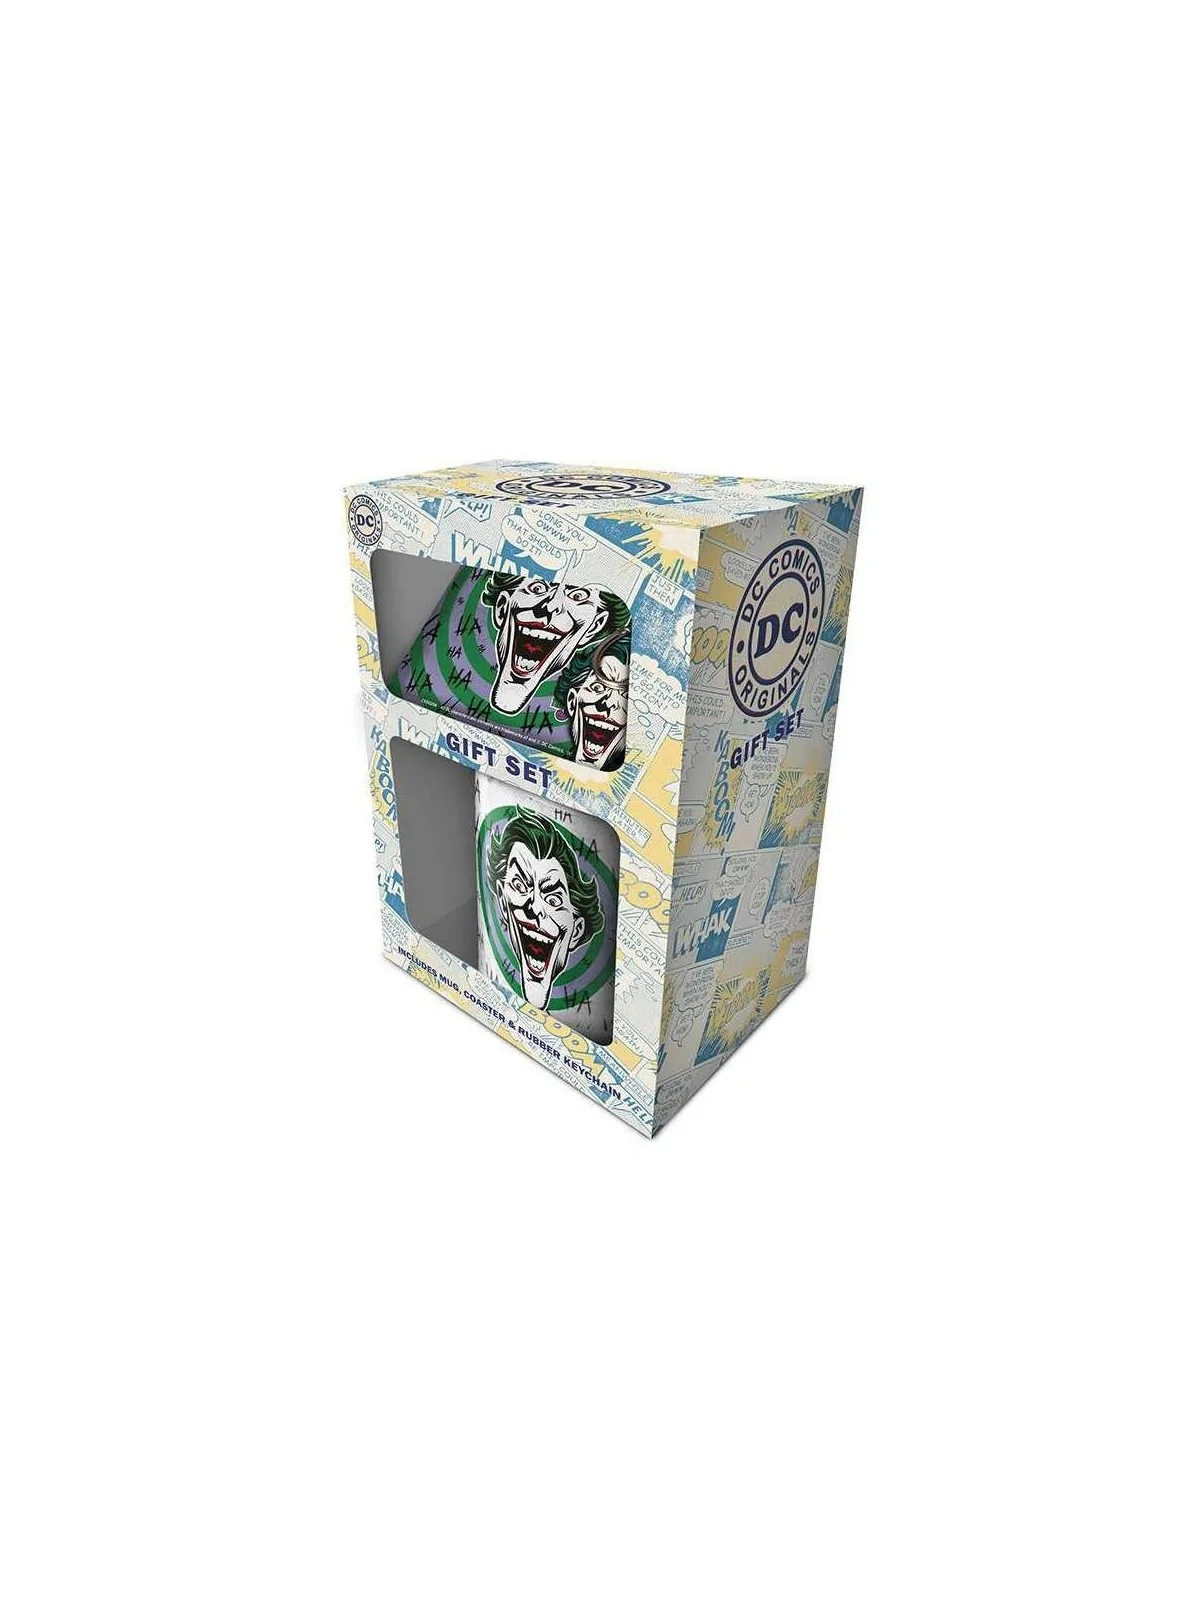 Comprar Set de Regalo DC Joker Caja (Hahaha) barato al mejor precio 15